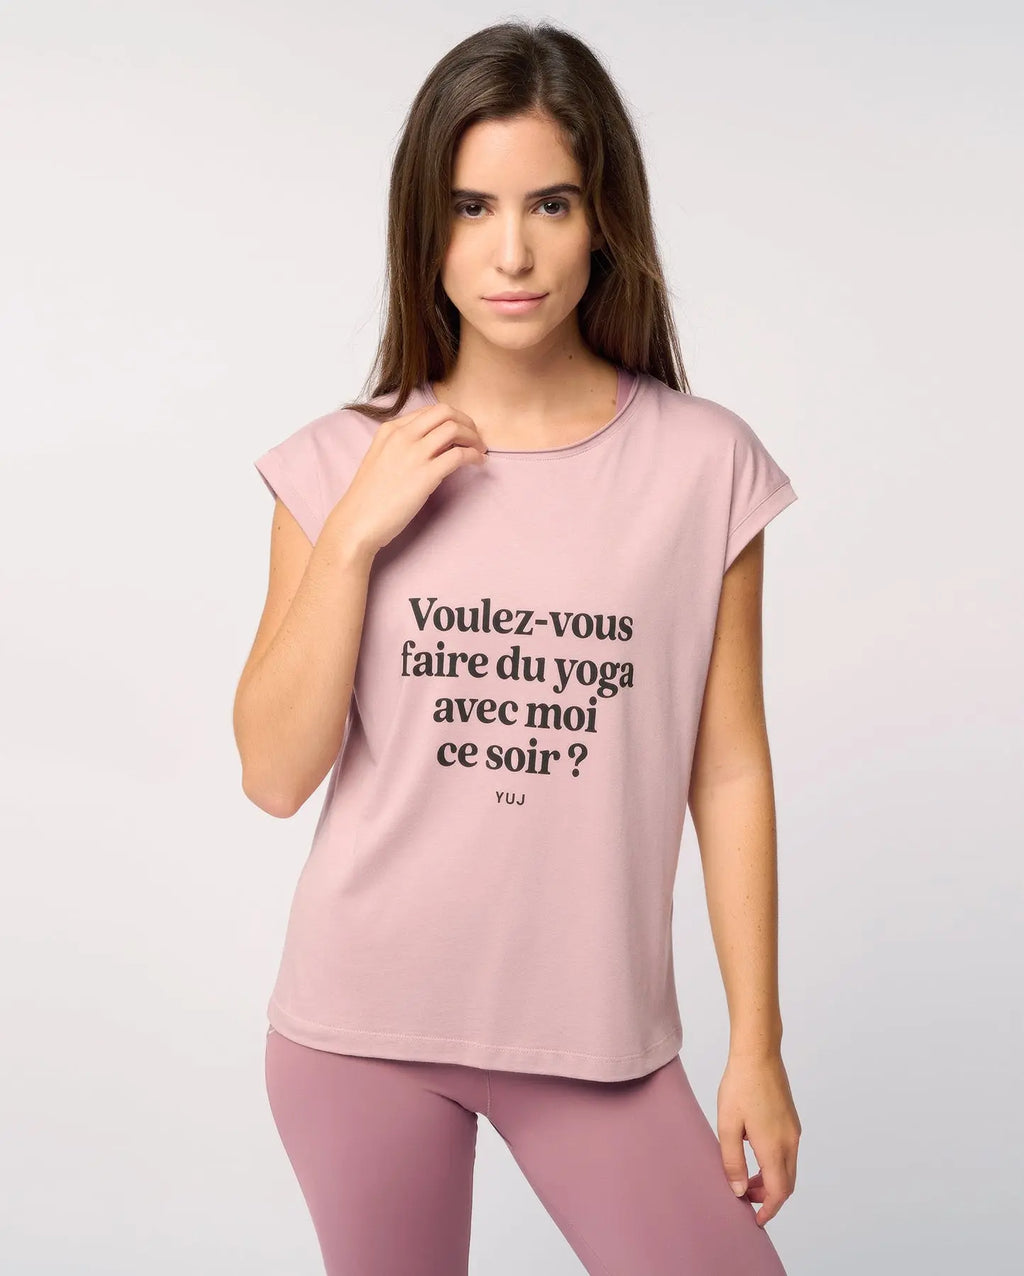 T-shirt en coton rose "VOULEZ-VOUS ?" YUJ - Maison de pleine conscience